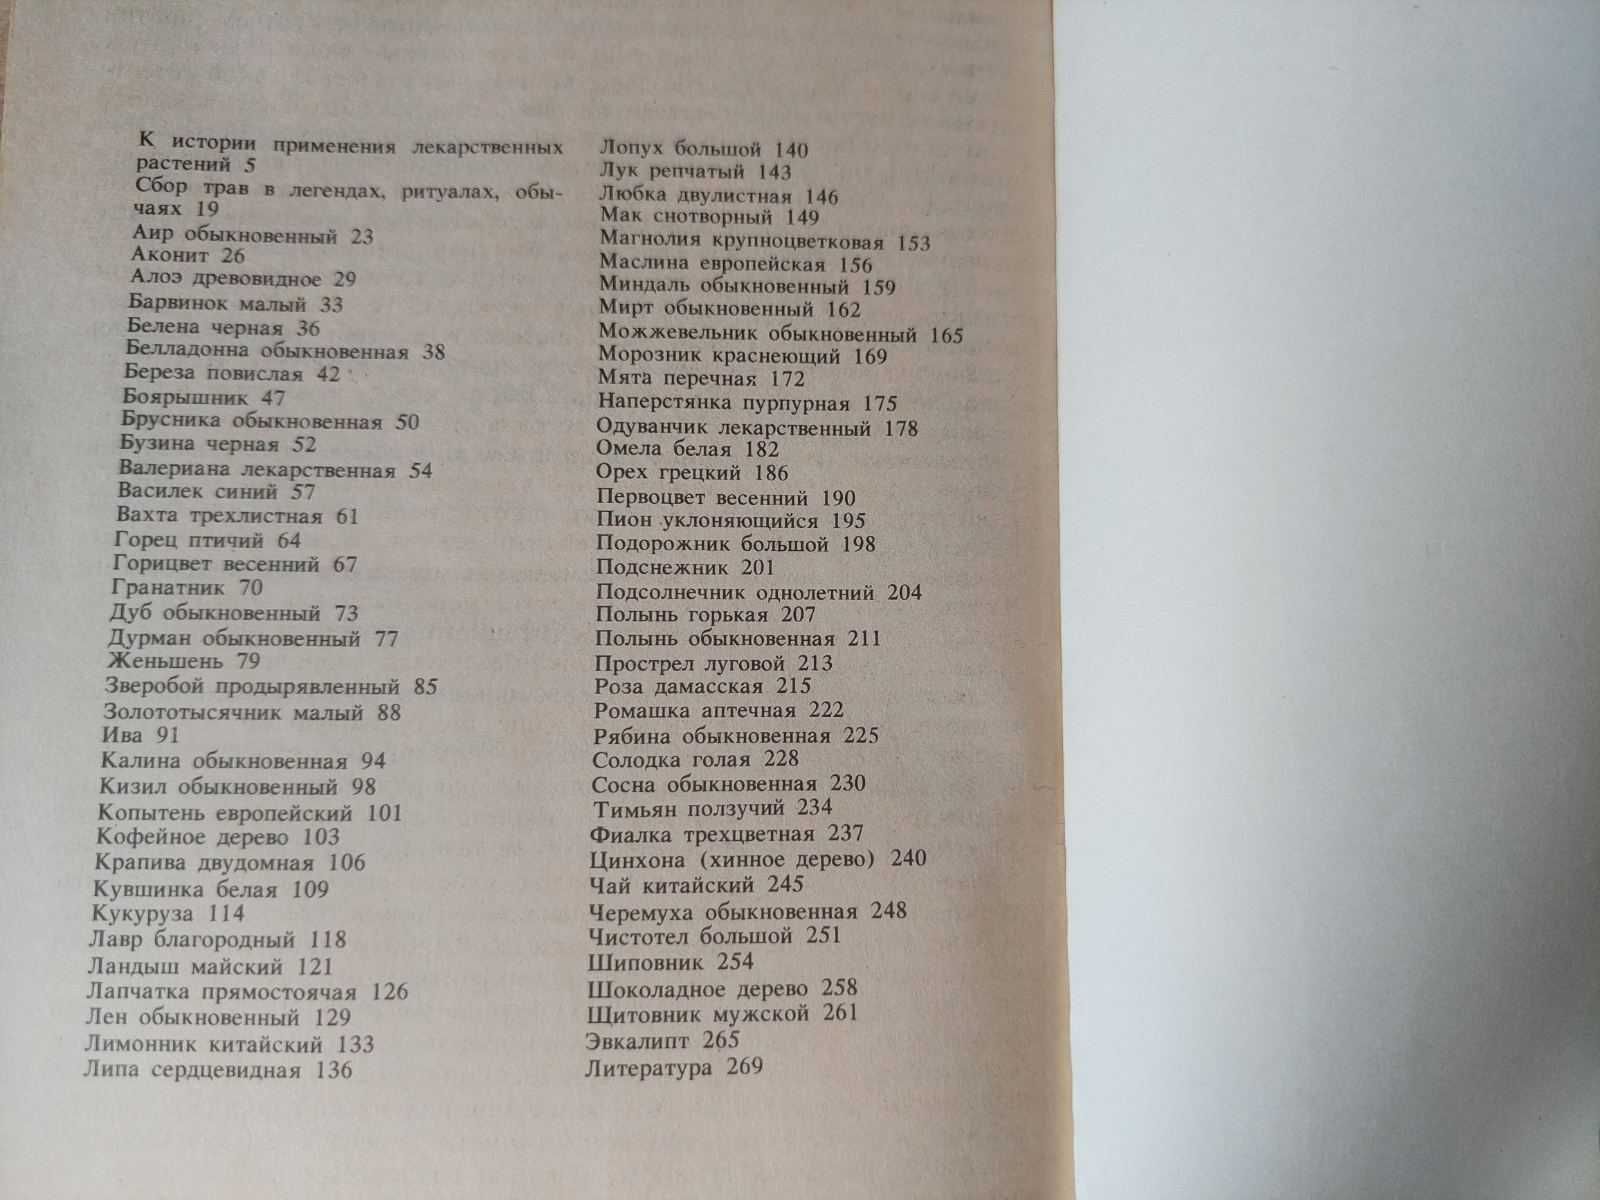 Кузнецова, М.; Резникова, А. Сказания о лекарственных растениях